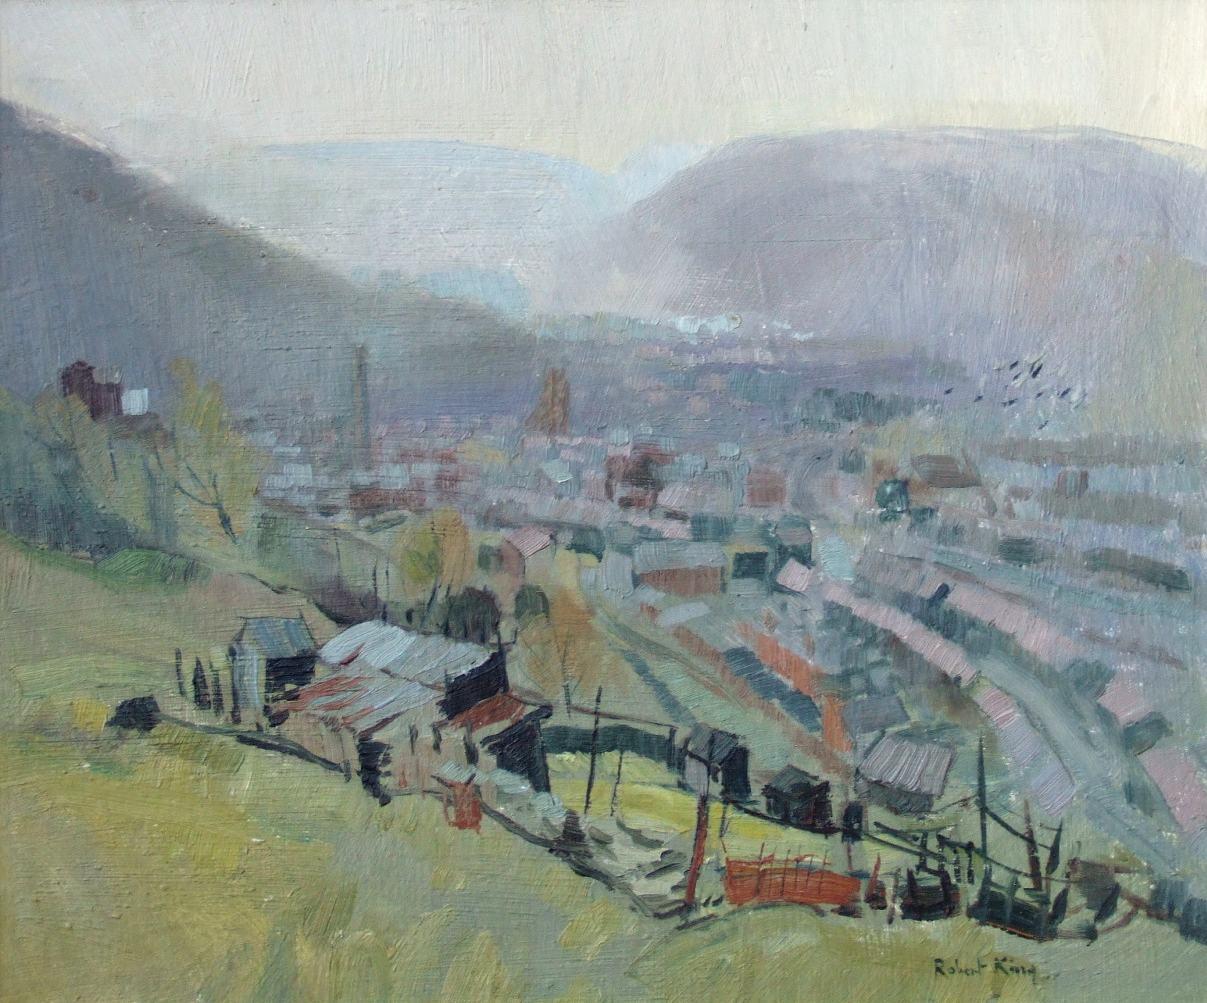 Robert King RI RSMA Landscape Painting - Rhondda valley, Wales, oil board, exhibit Royal Academy 1969 No.385, Robert King